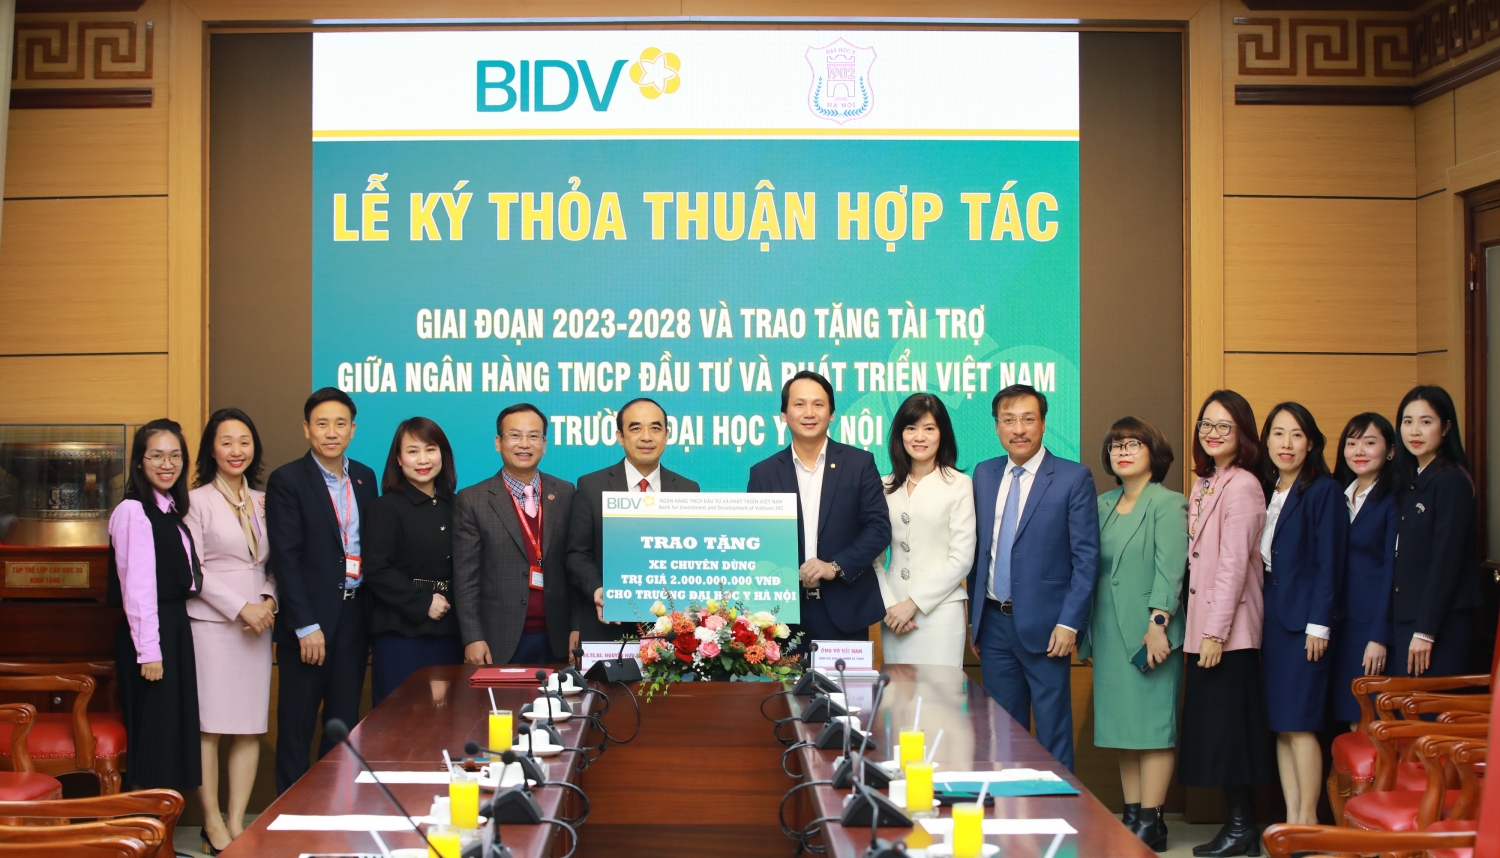 BIDV và Trường Đại học Y Hà Nội ký kết thỏa thuận hợp tác giai đoạn 2023-2028